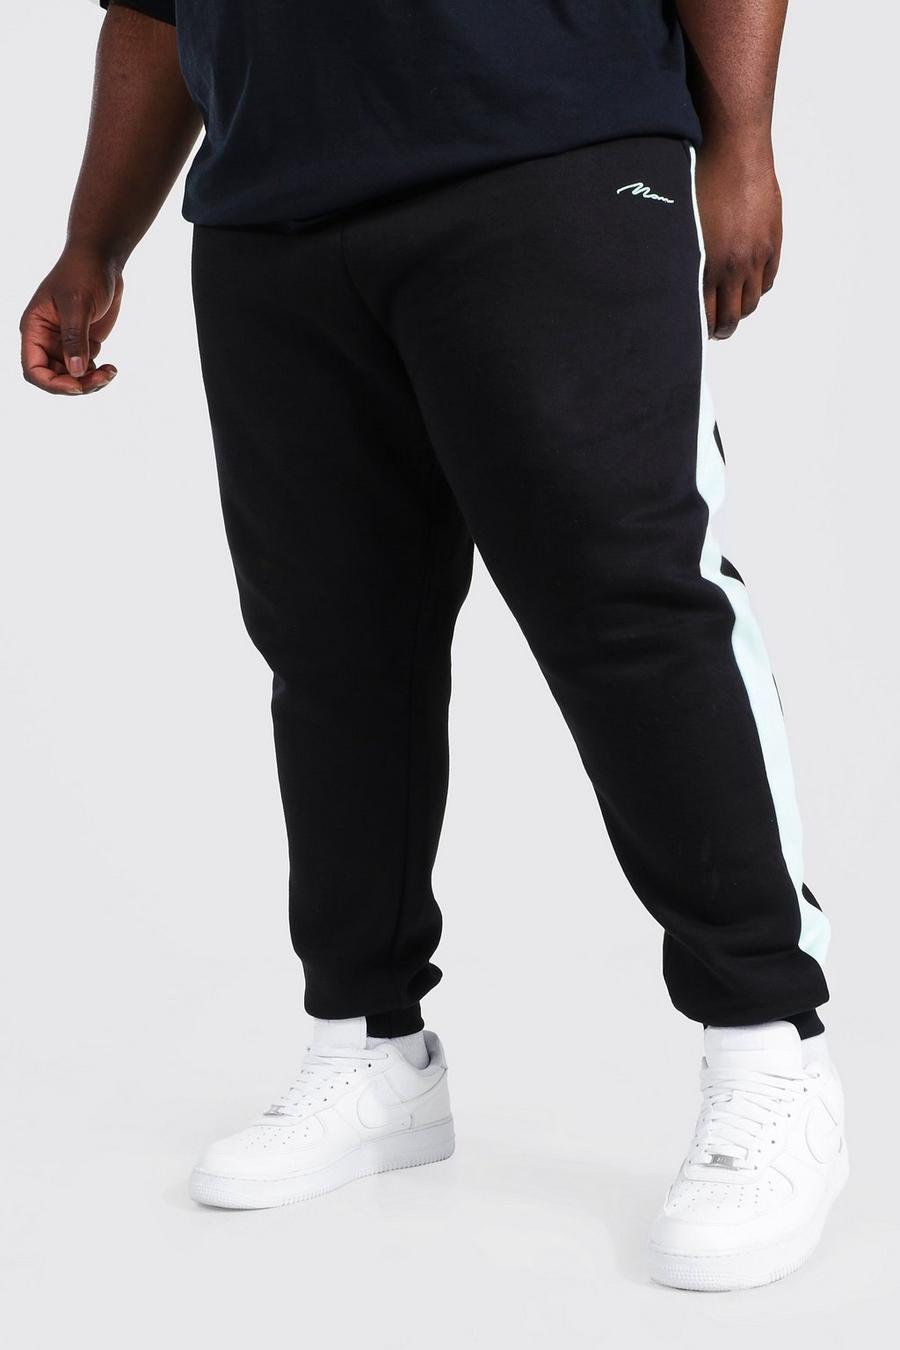 Pantalón deportivo Plus MAN ajustado con colores en bloque, Mint image number 1